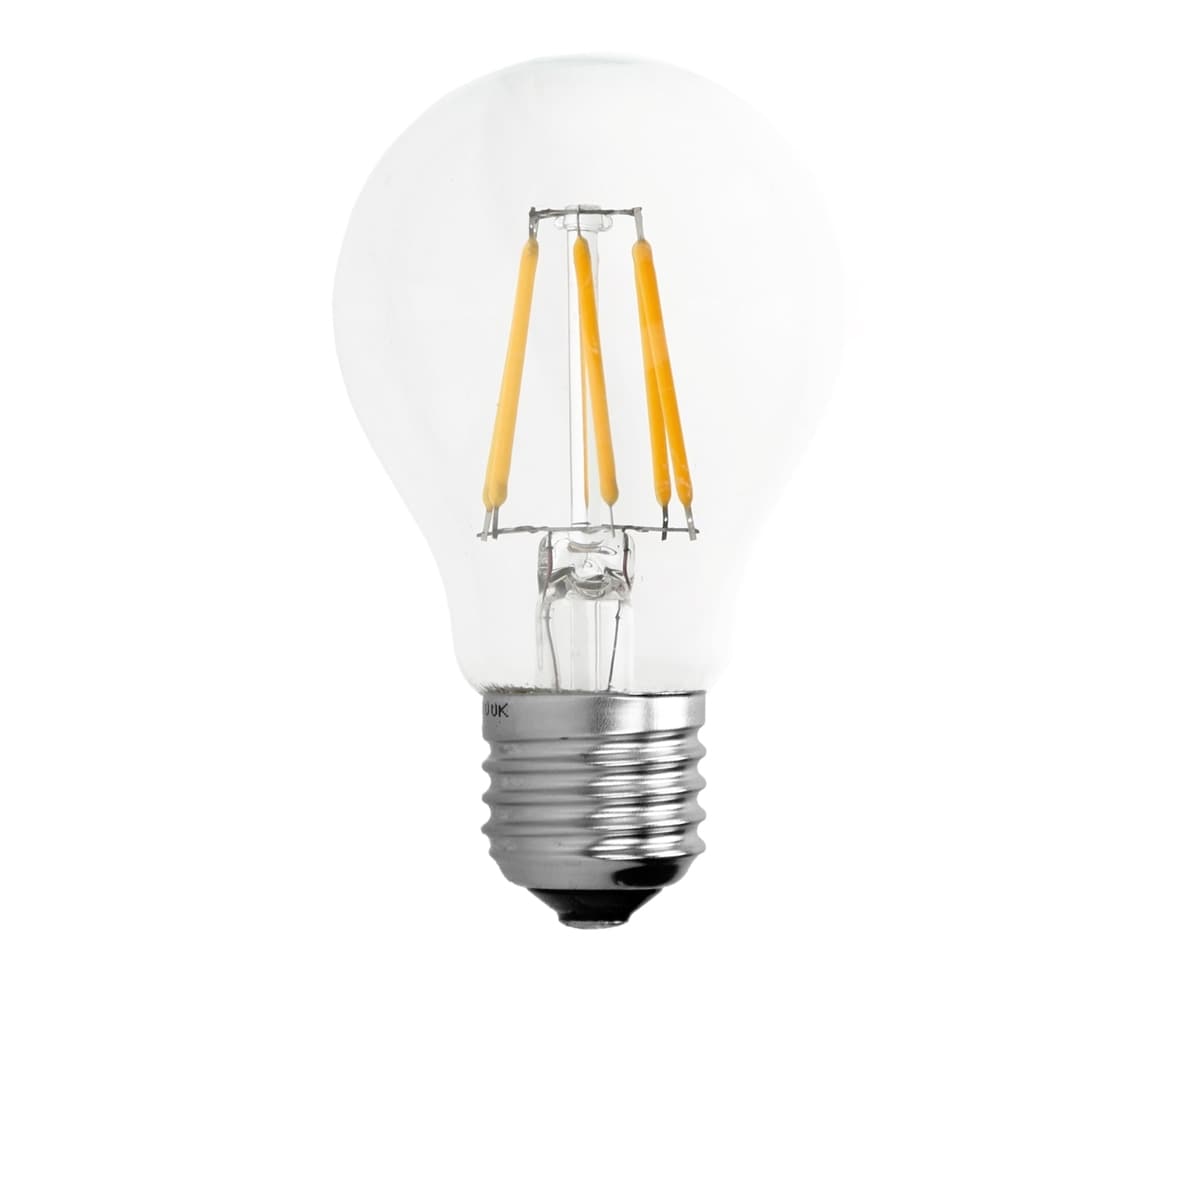 10xE27 LED-lampa glödlampa glödlampa lampor tappning varmvitt ljus 6W -  Elgiganten